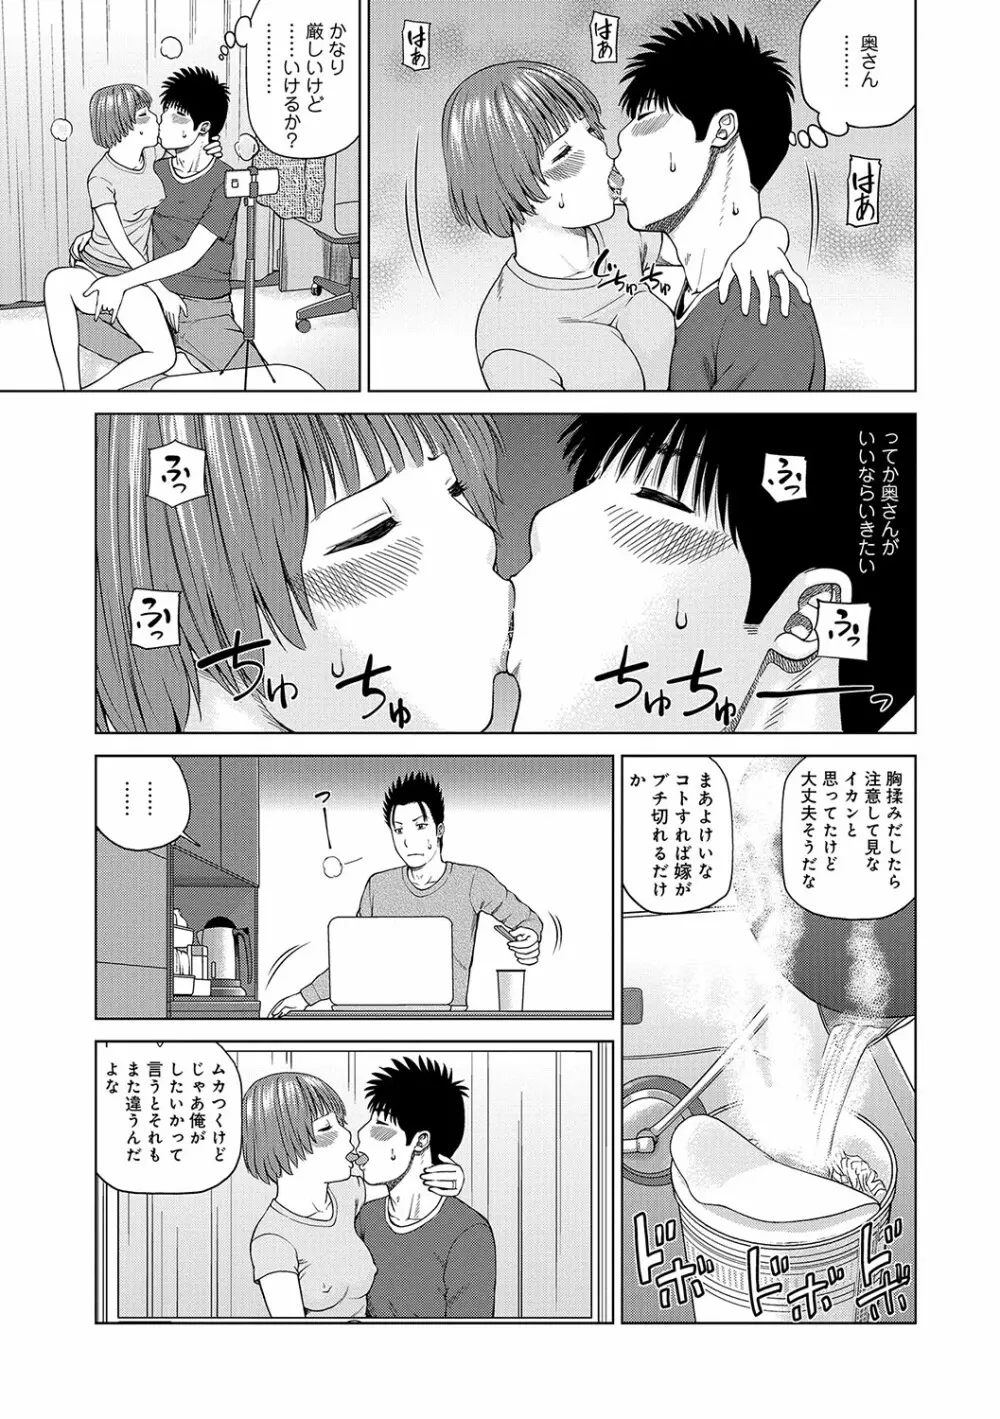 WEB版コミック激ヤバ! vol.96 10ページ